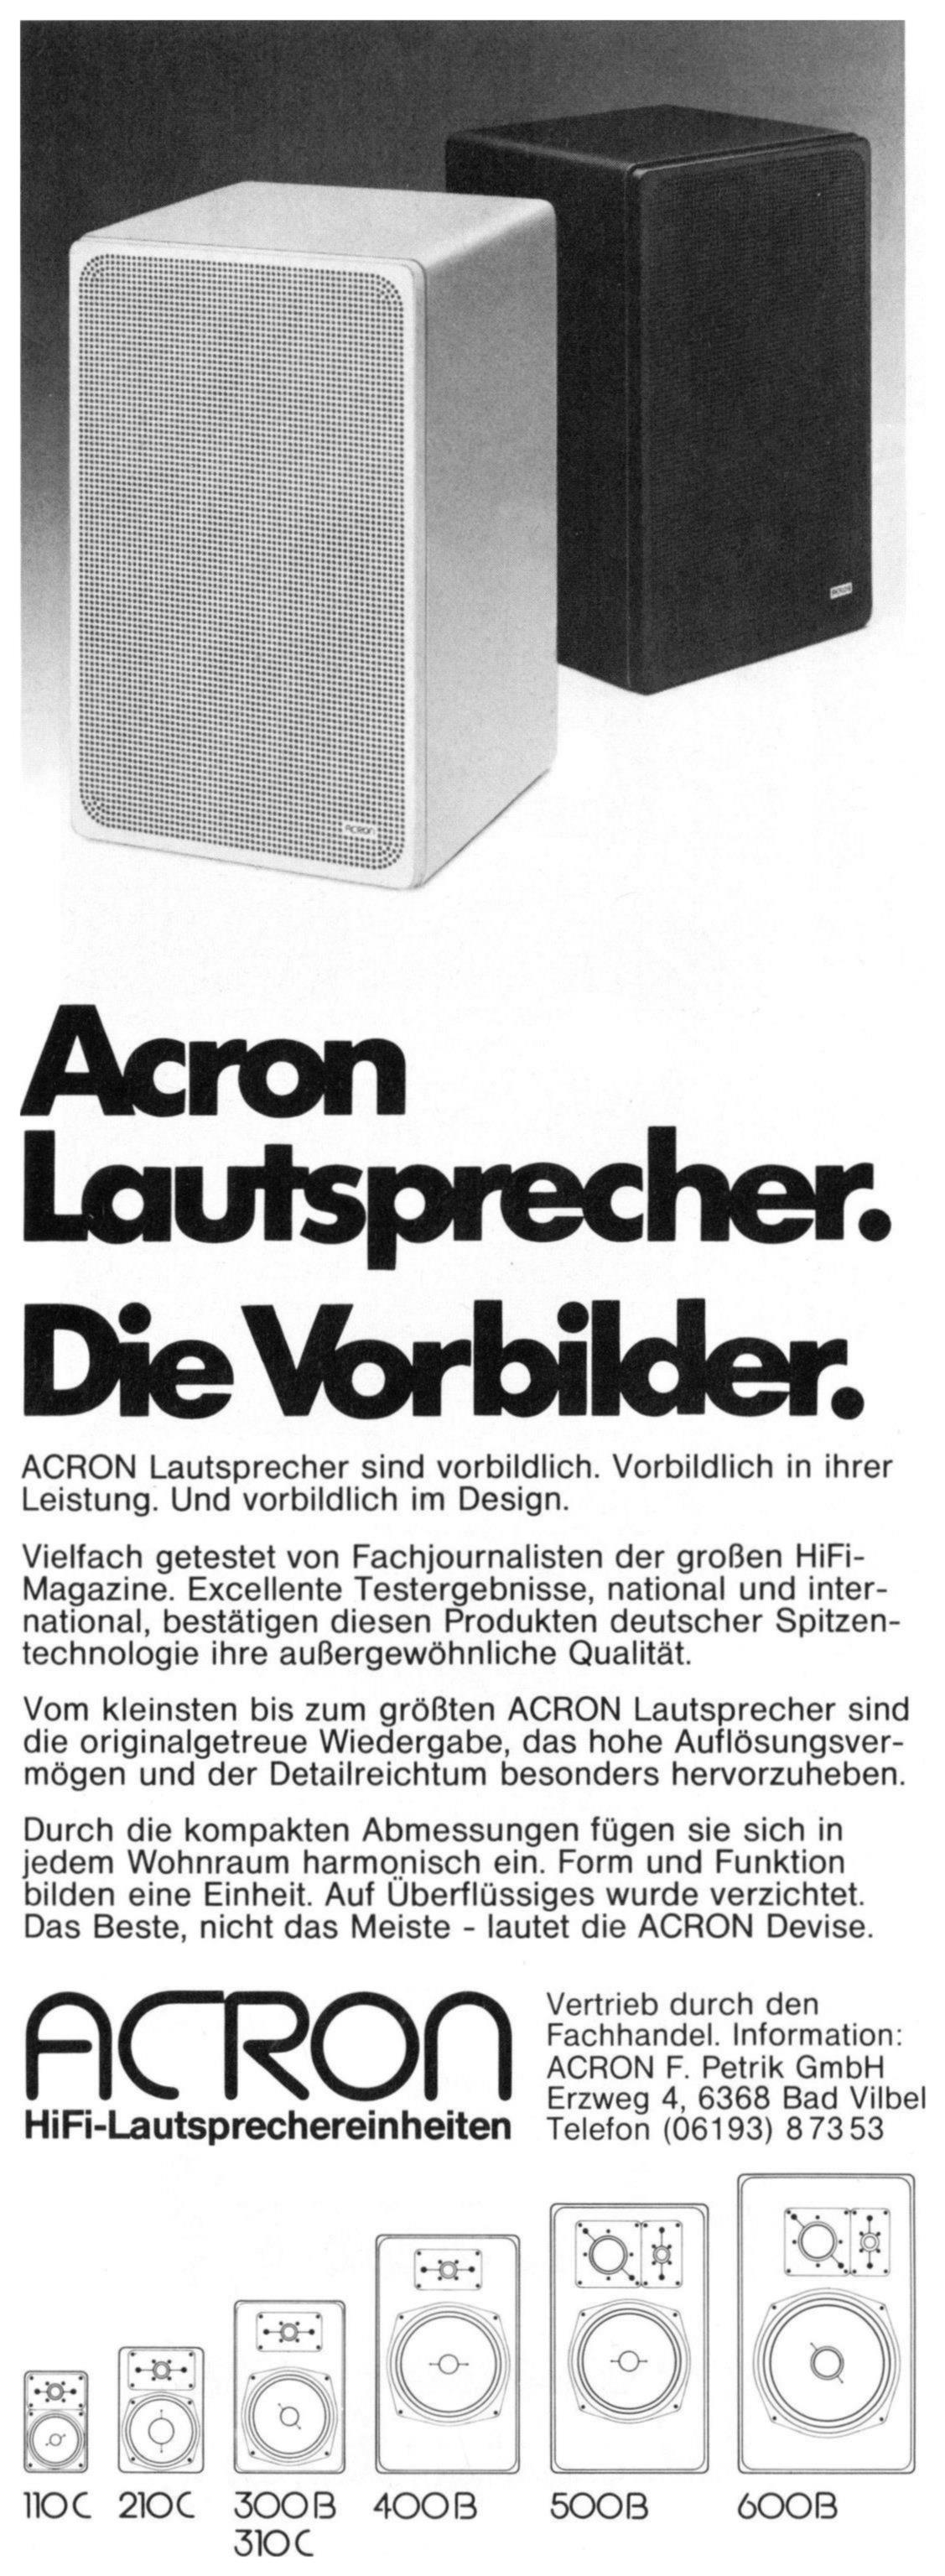 Acron 1984 0.jpg